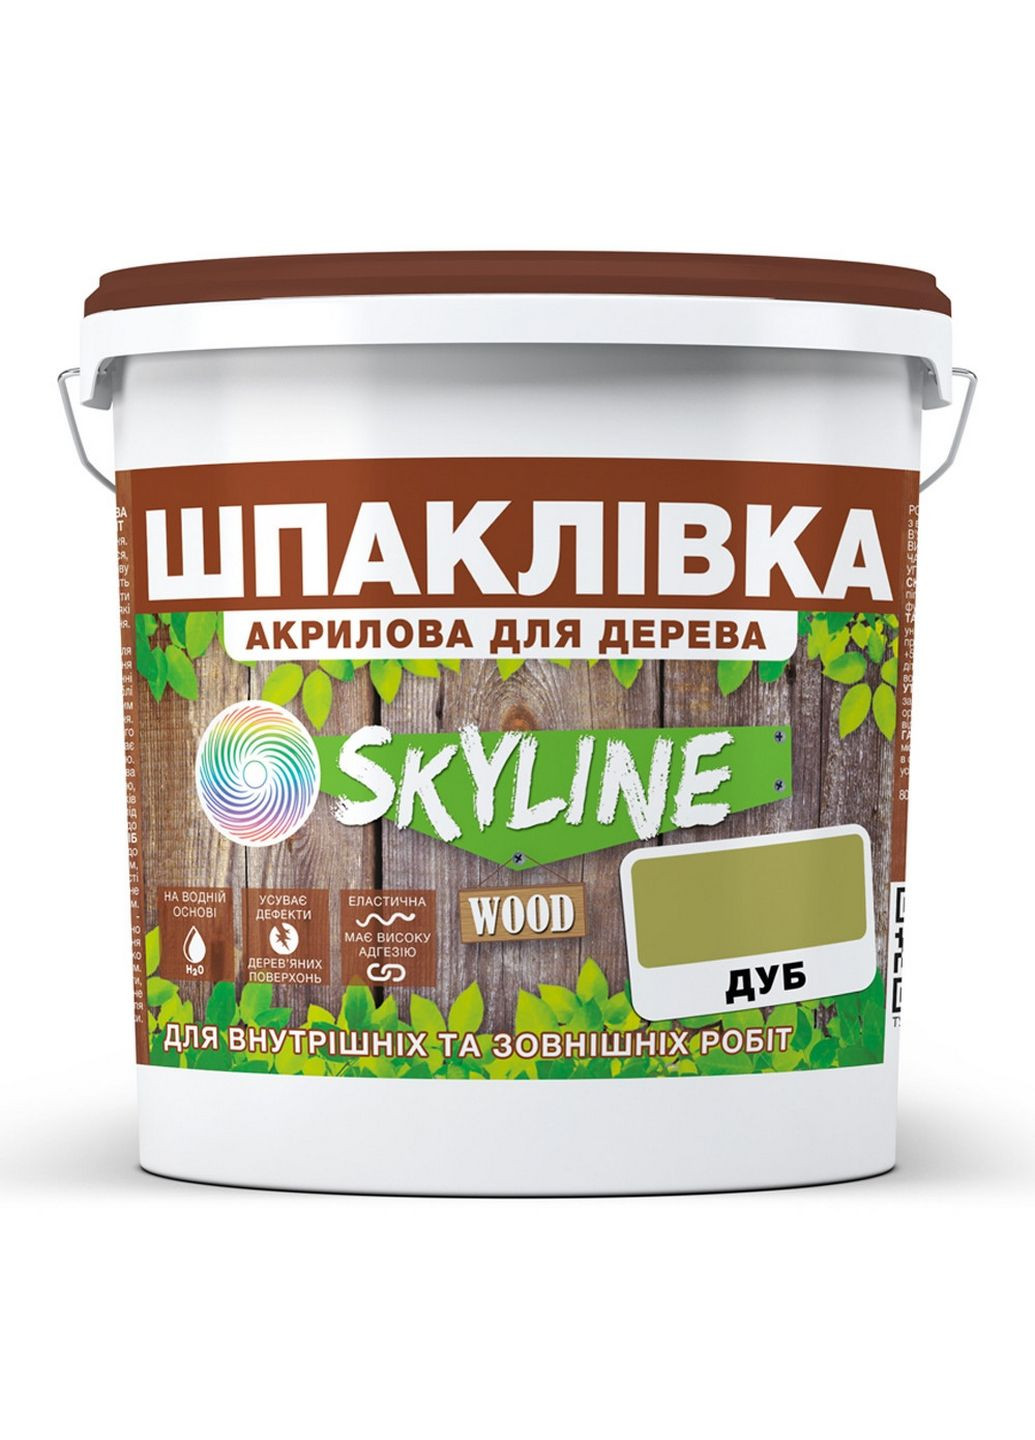 Шпаклівка для Дерева готова до застосування акрилу Wood Дуб 7 кг SkyLine (283327494)